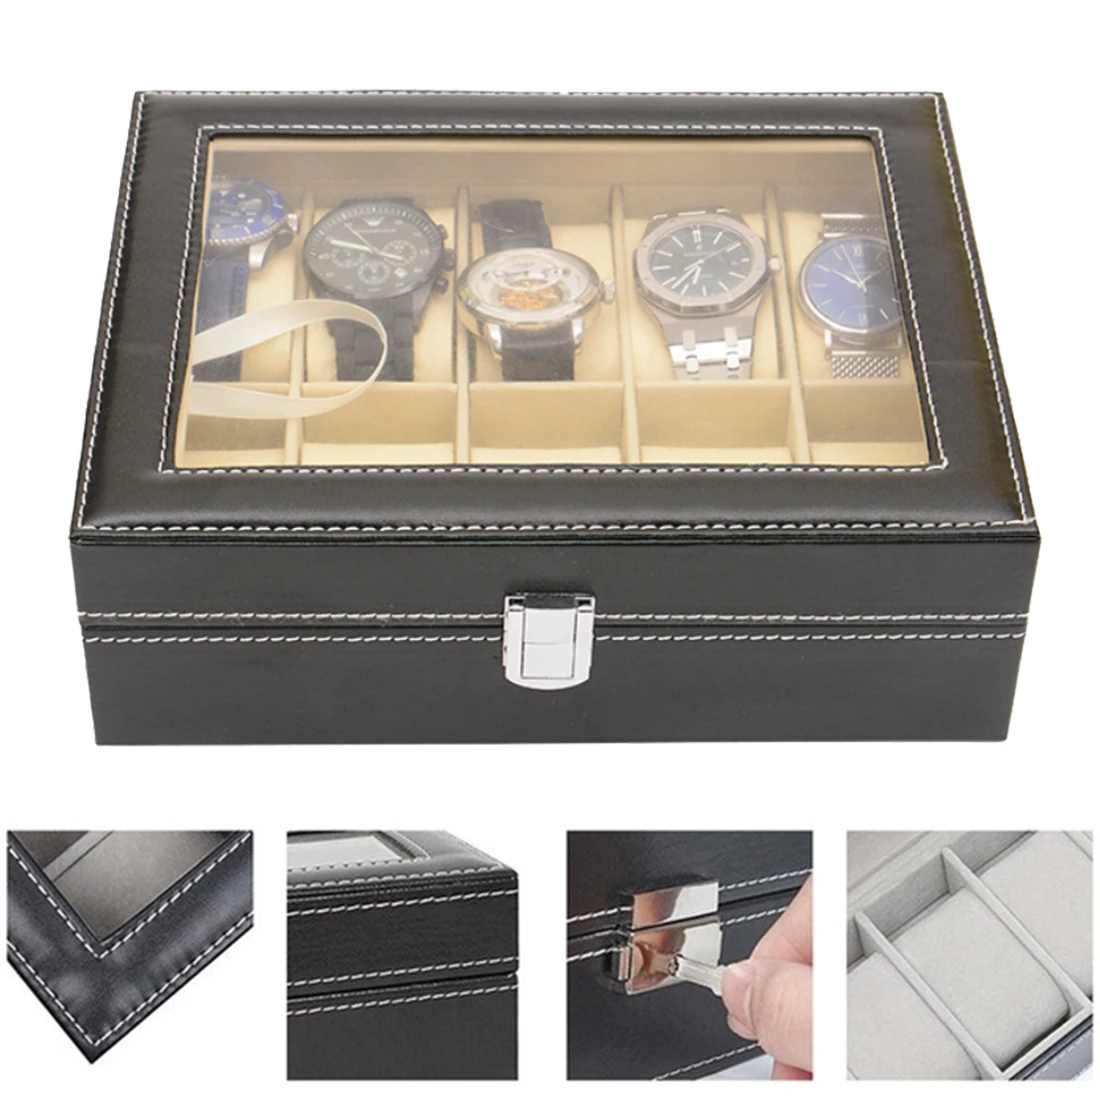 Часы Дисплей многофункциональная коробка часы коробка держатель чехол для дорогие украшения часы хранения наручные часы коробка